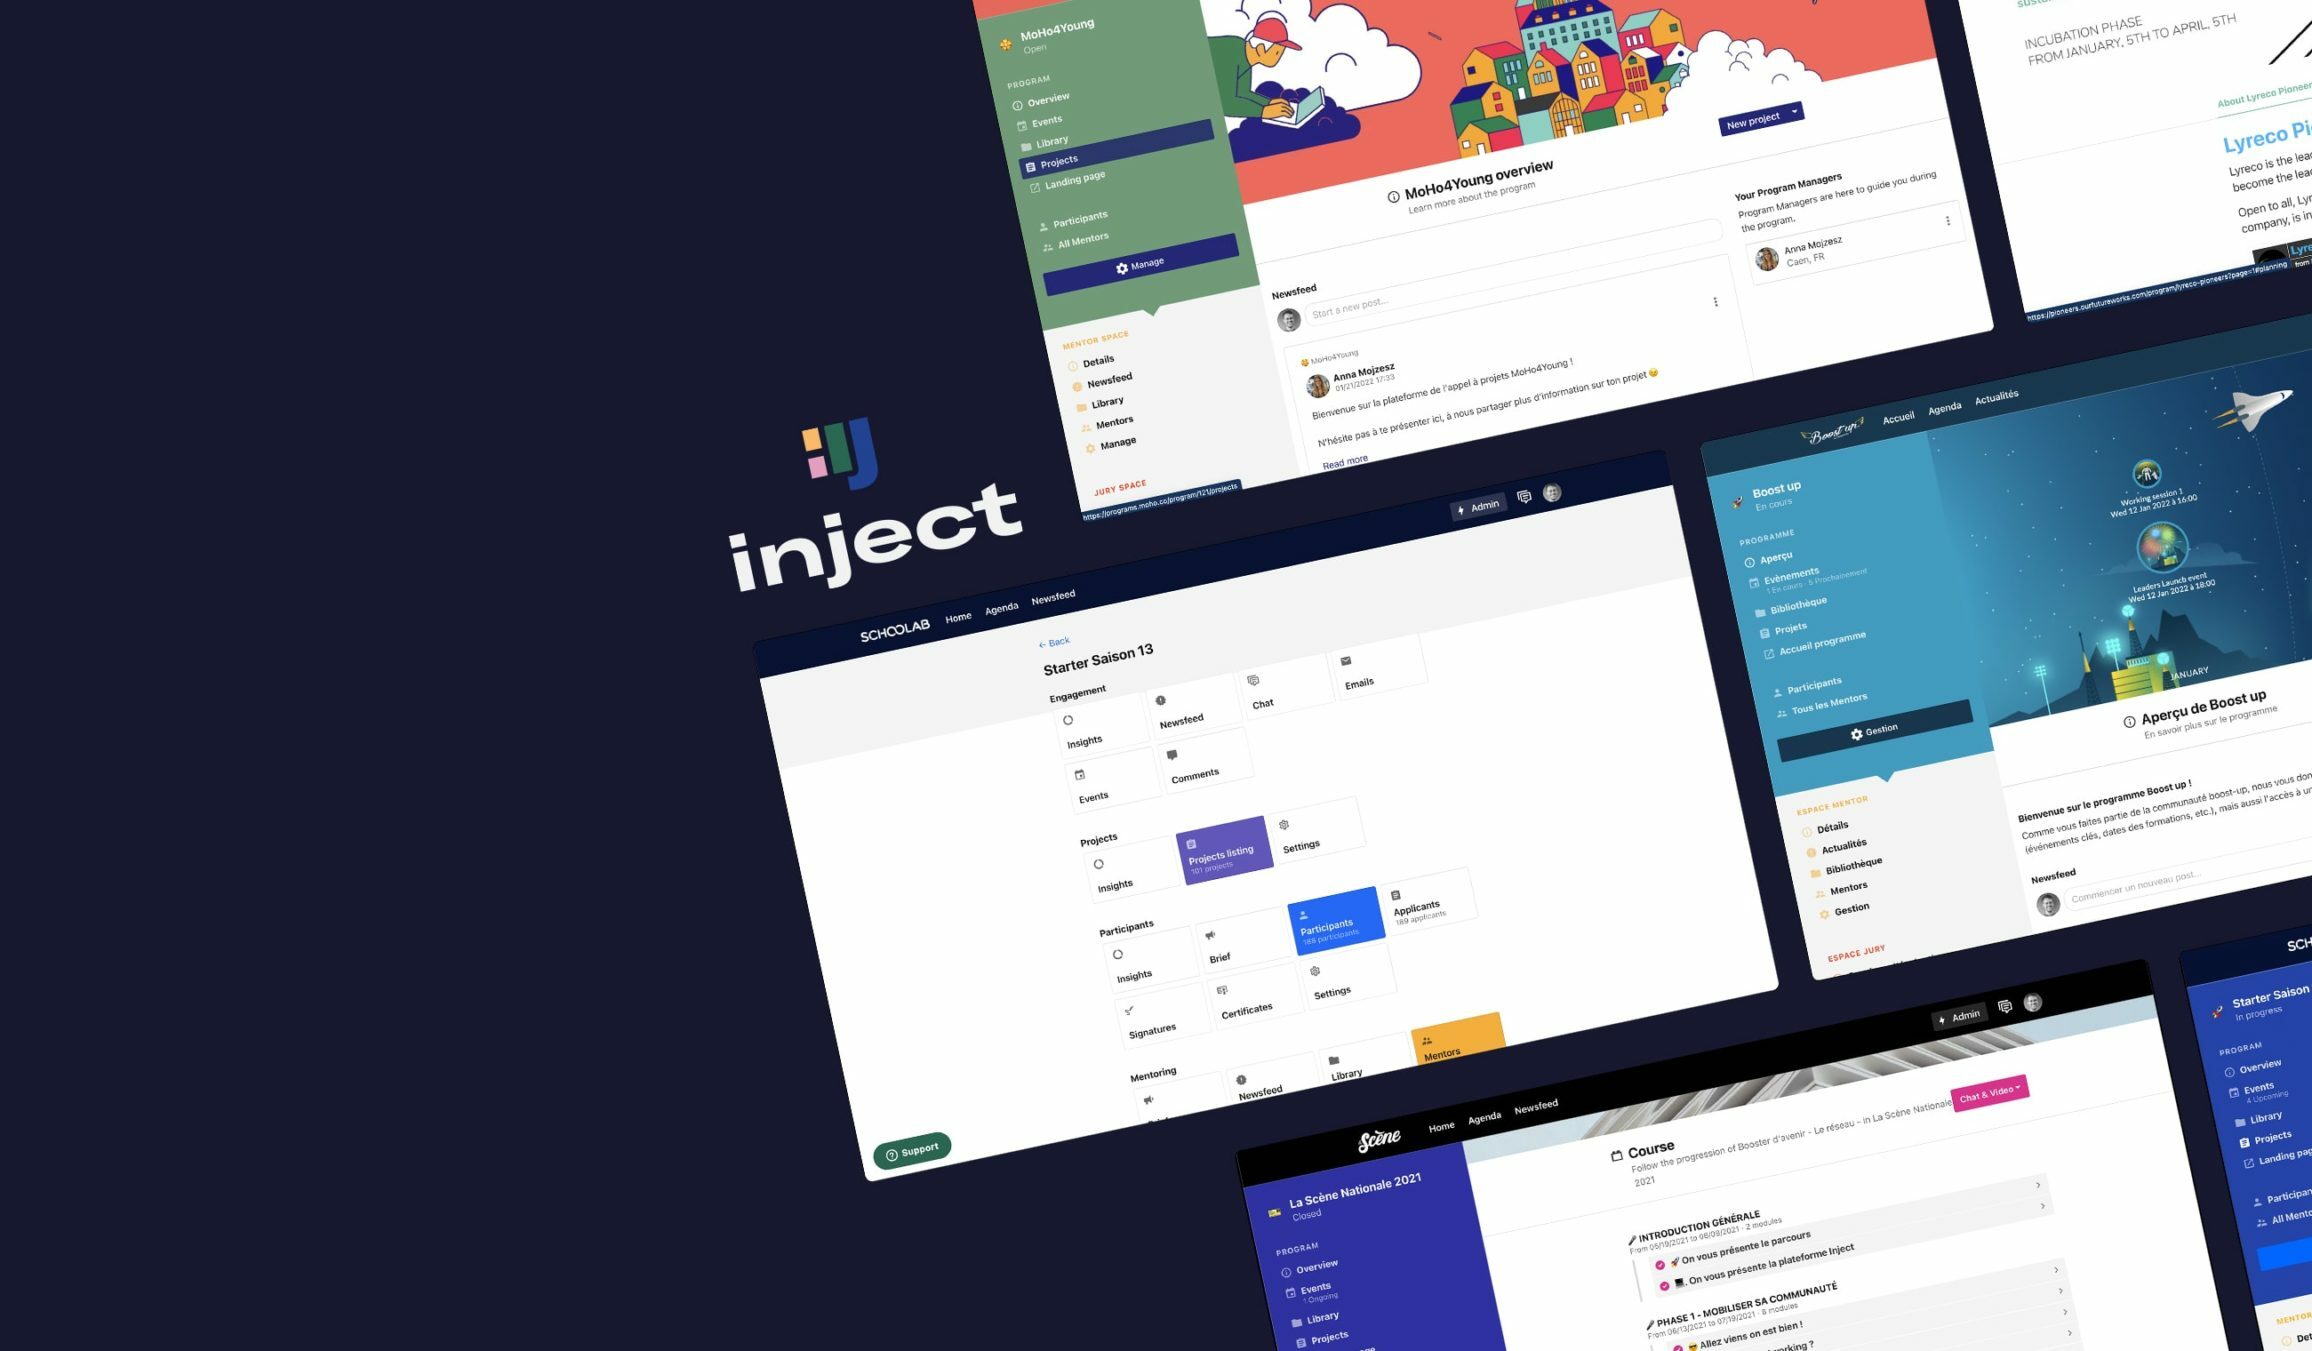 Visuelle de présentation de la plateforme Injetct